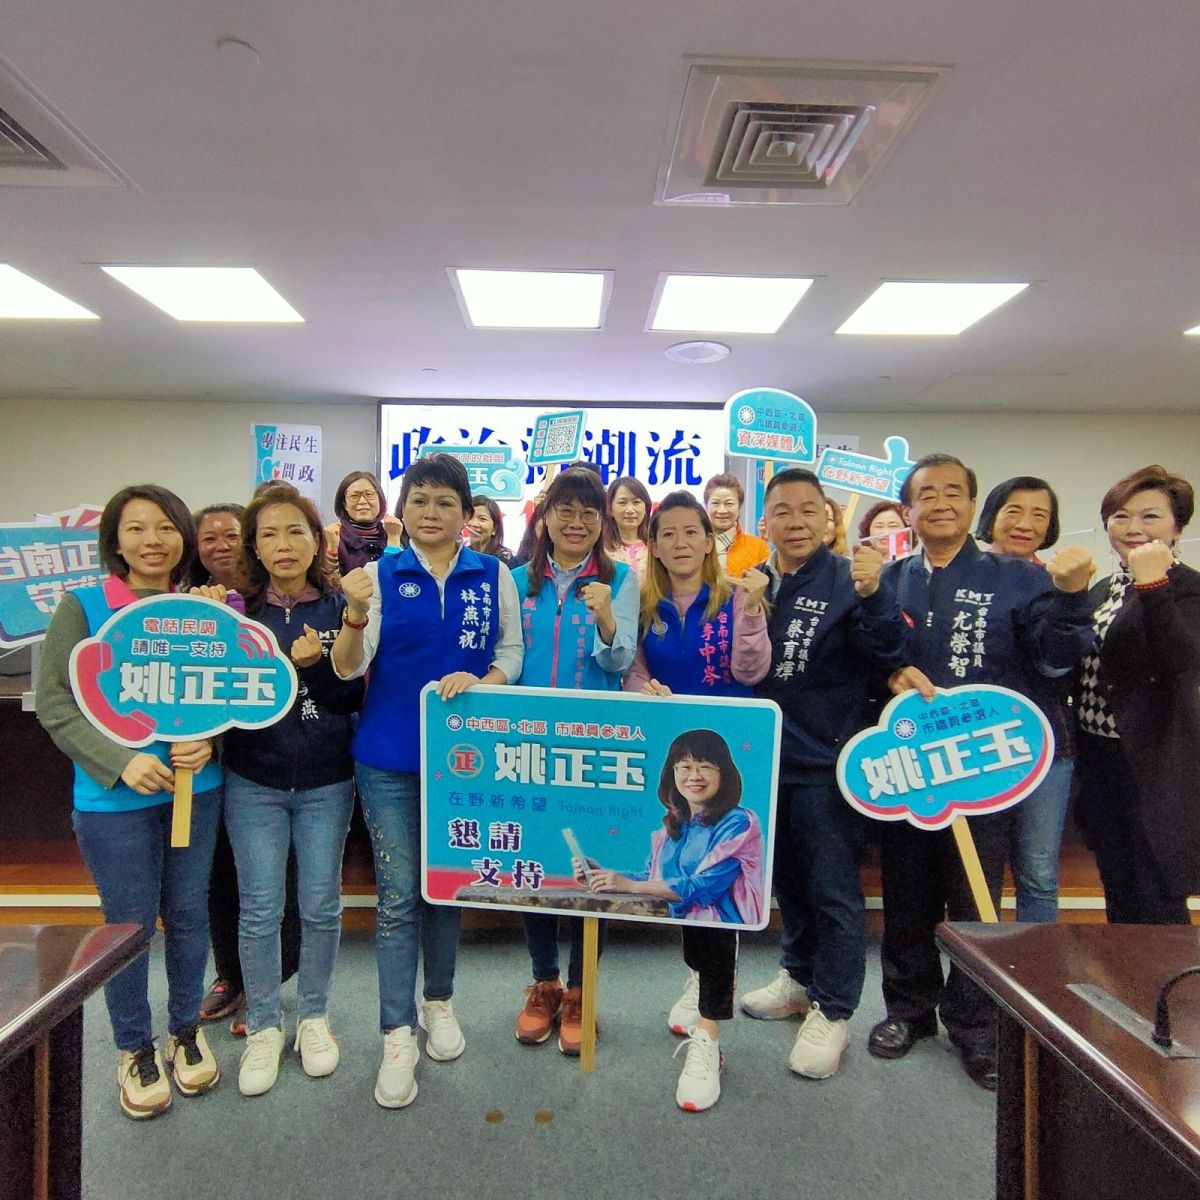  女力爆發 藍軍加持 台南媒體人投入中西北區議員選舉  
